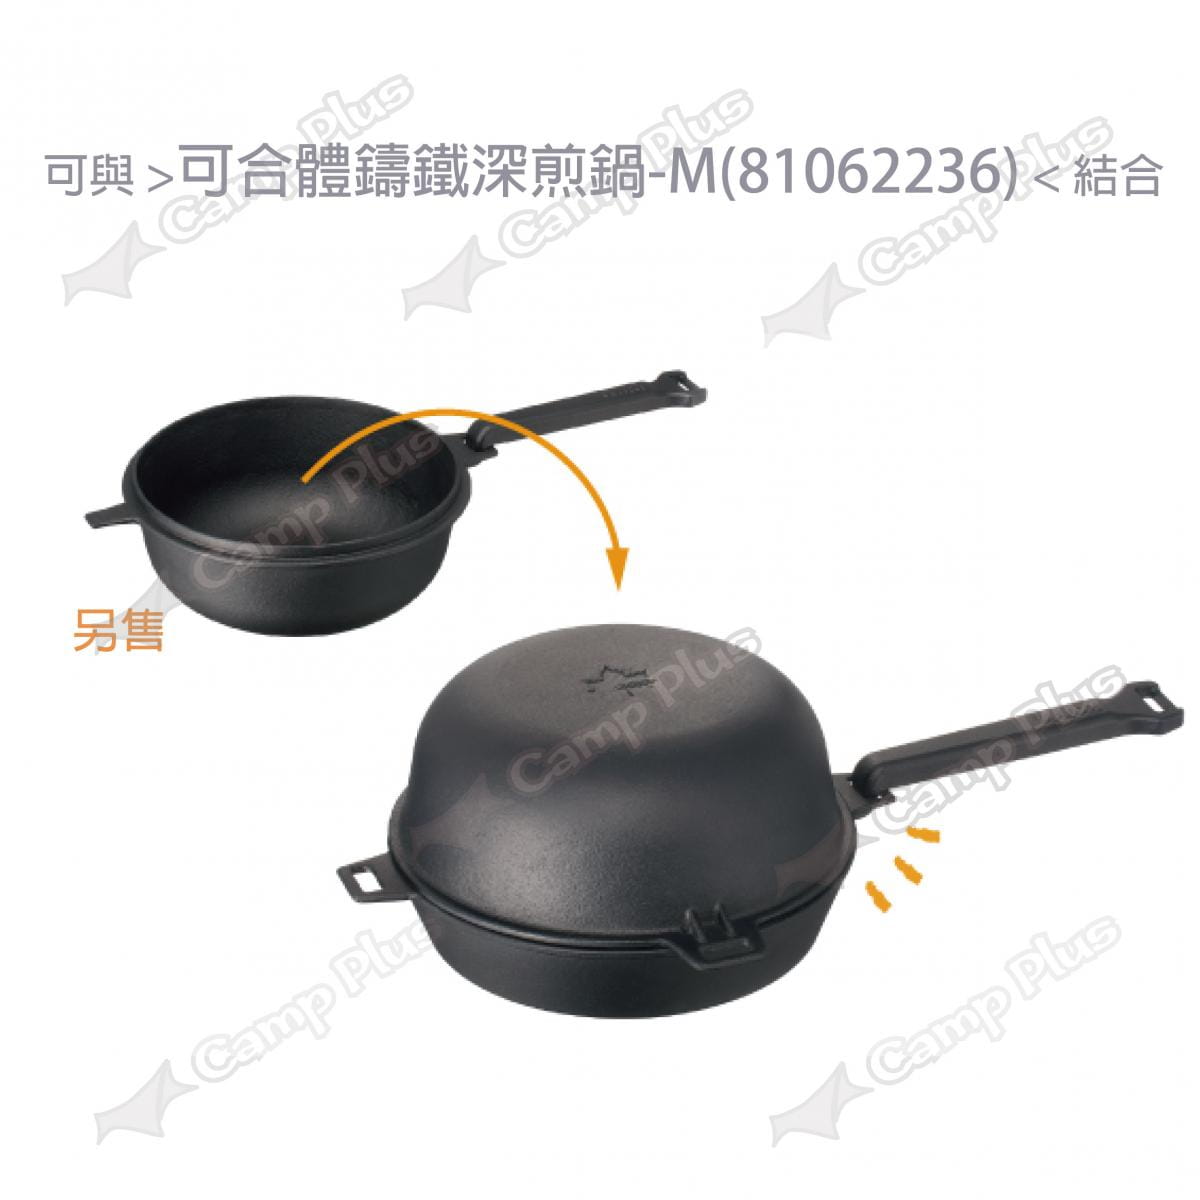 【日本LOGOS】 可合體鑄鐵煎鍋M(22cm)_LG81062235 (悠遊戶外) 3